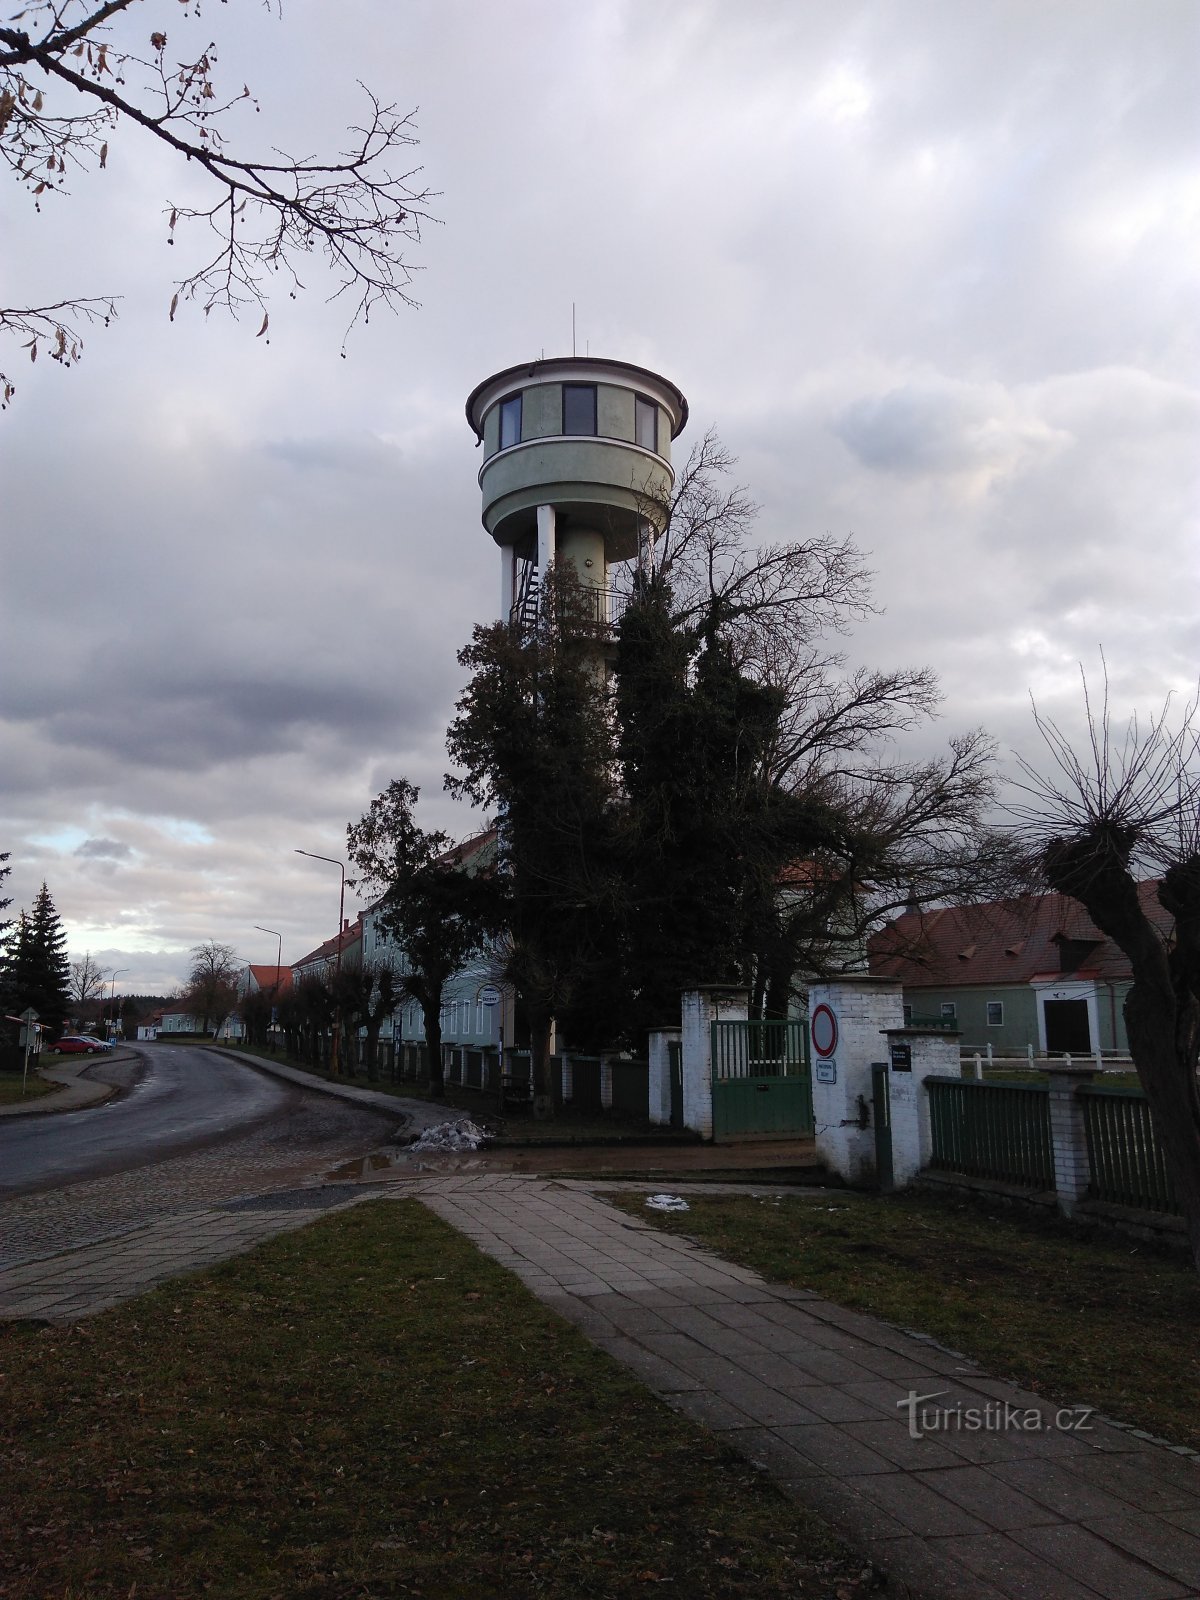 Kladruby nad Labem - Torre di osservazione di Vodojem